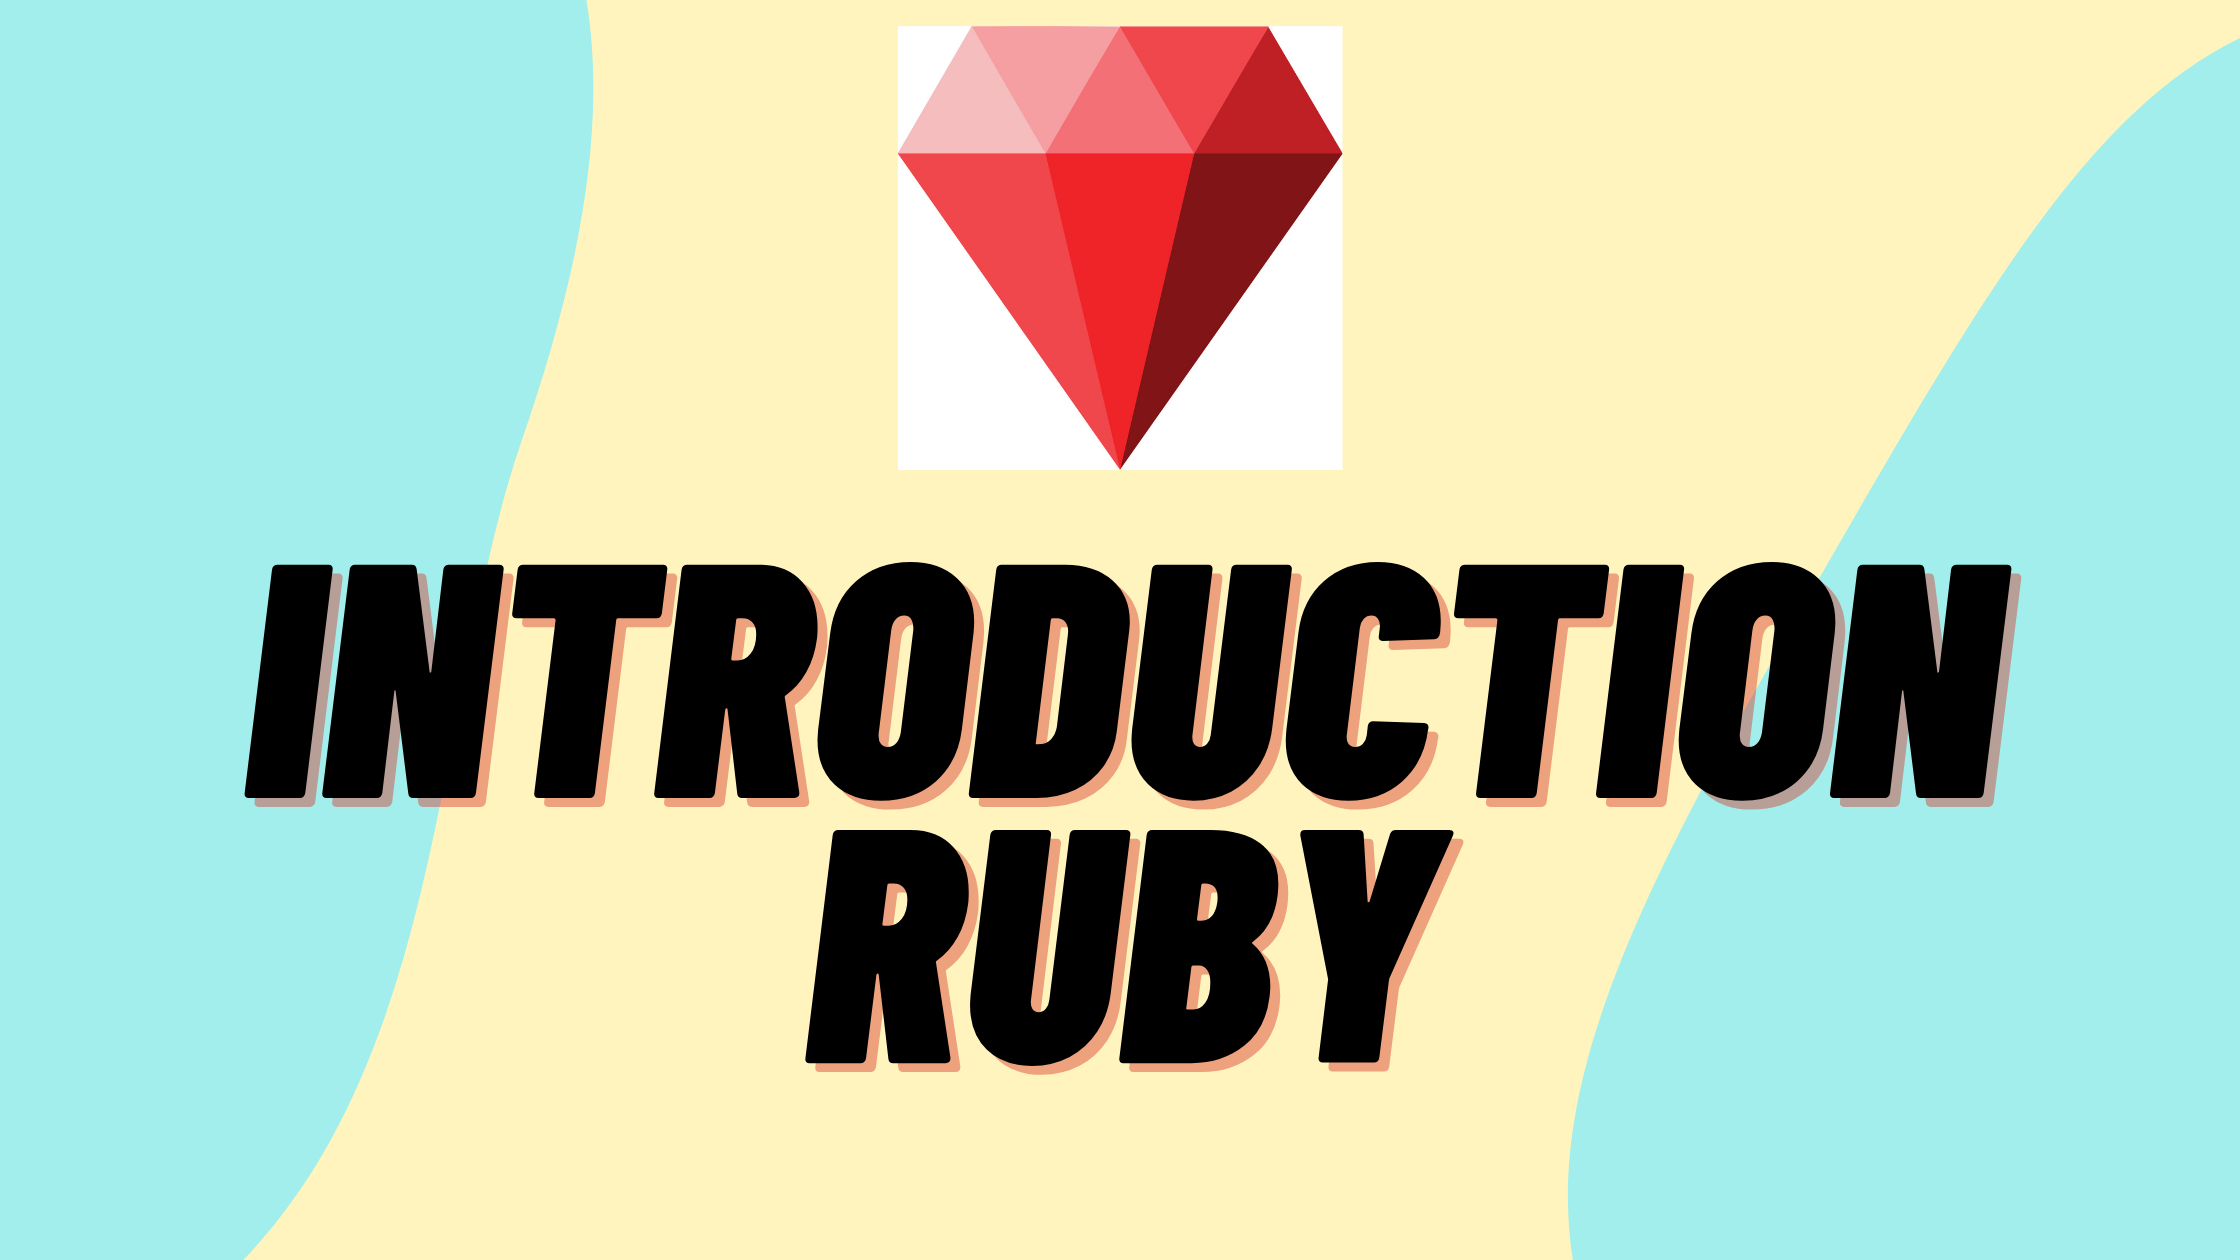 ruby programming language wallpaper